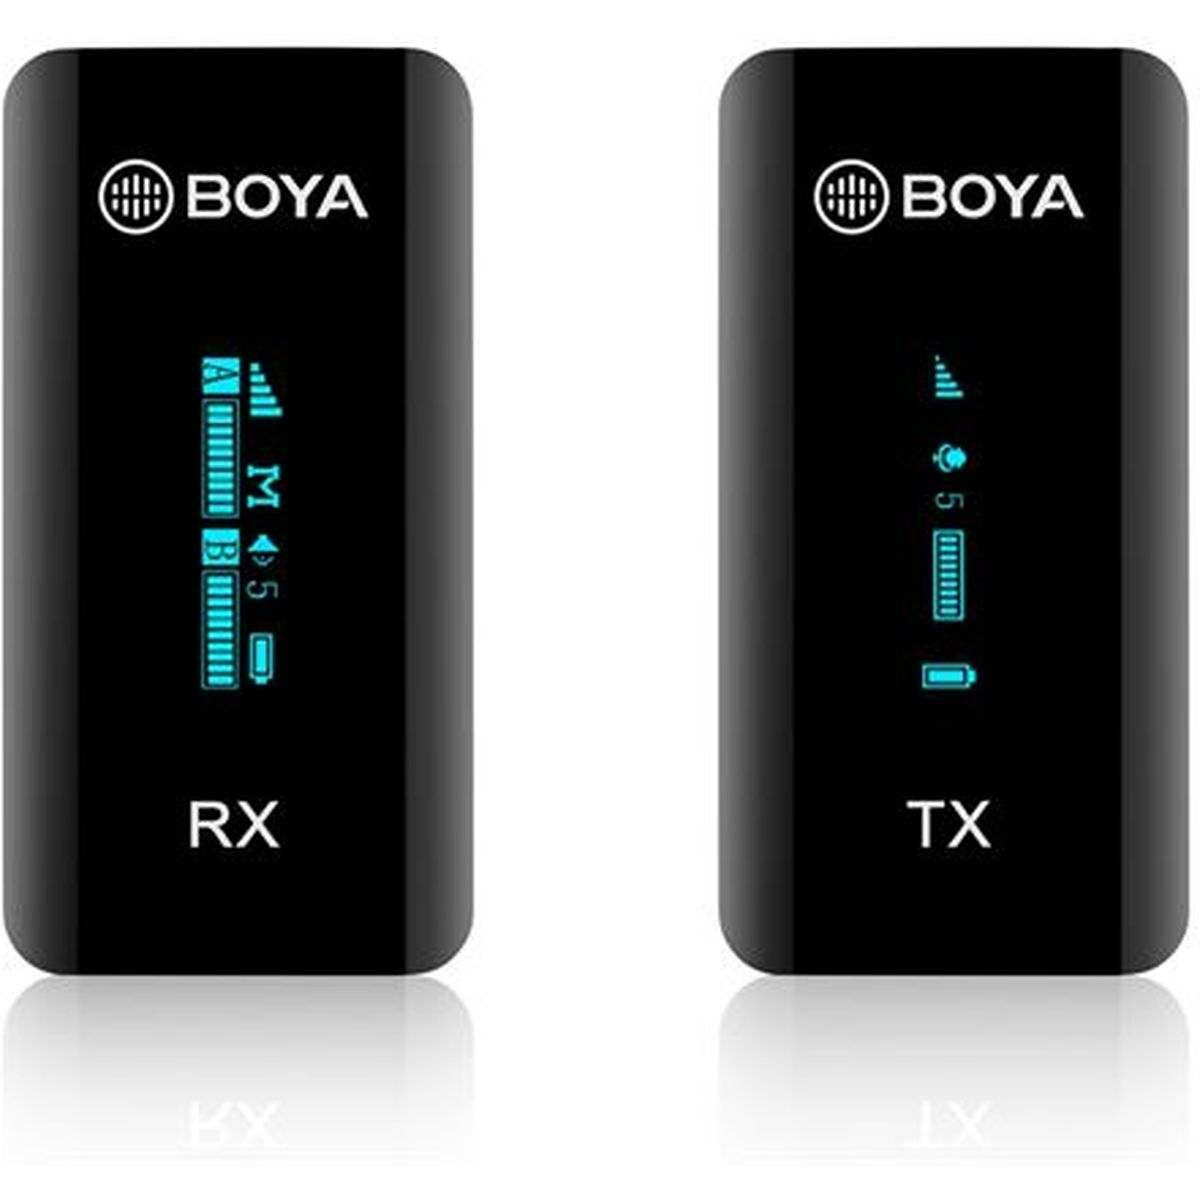 Kép 2/2 - BOYA ultra-kompakt vezeték nélküli mikrofon szett OLED kijelzővel kamerához, okostelefonhoz (3.5mm Jack TRS/TRRScsatlakozás), fekete EU